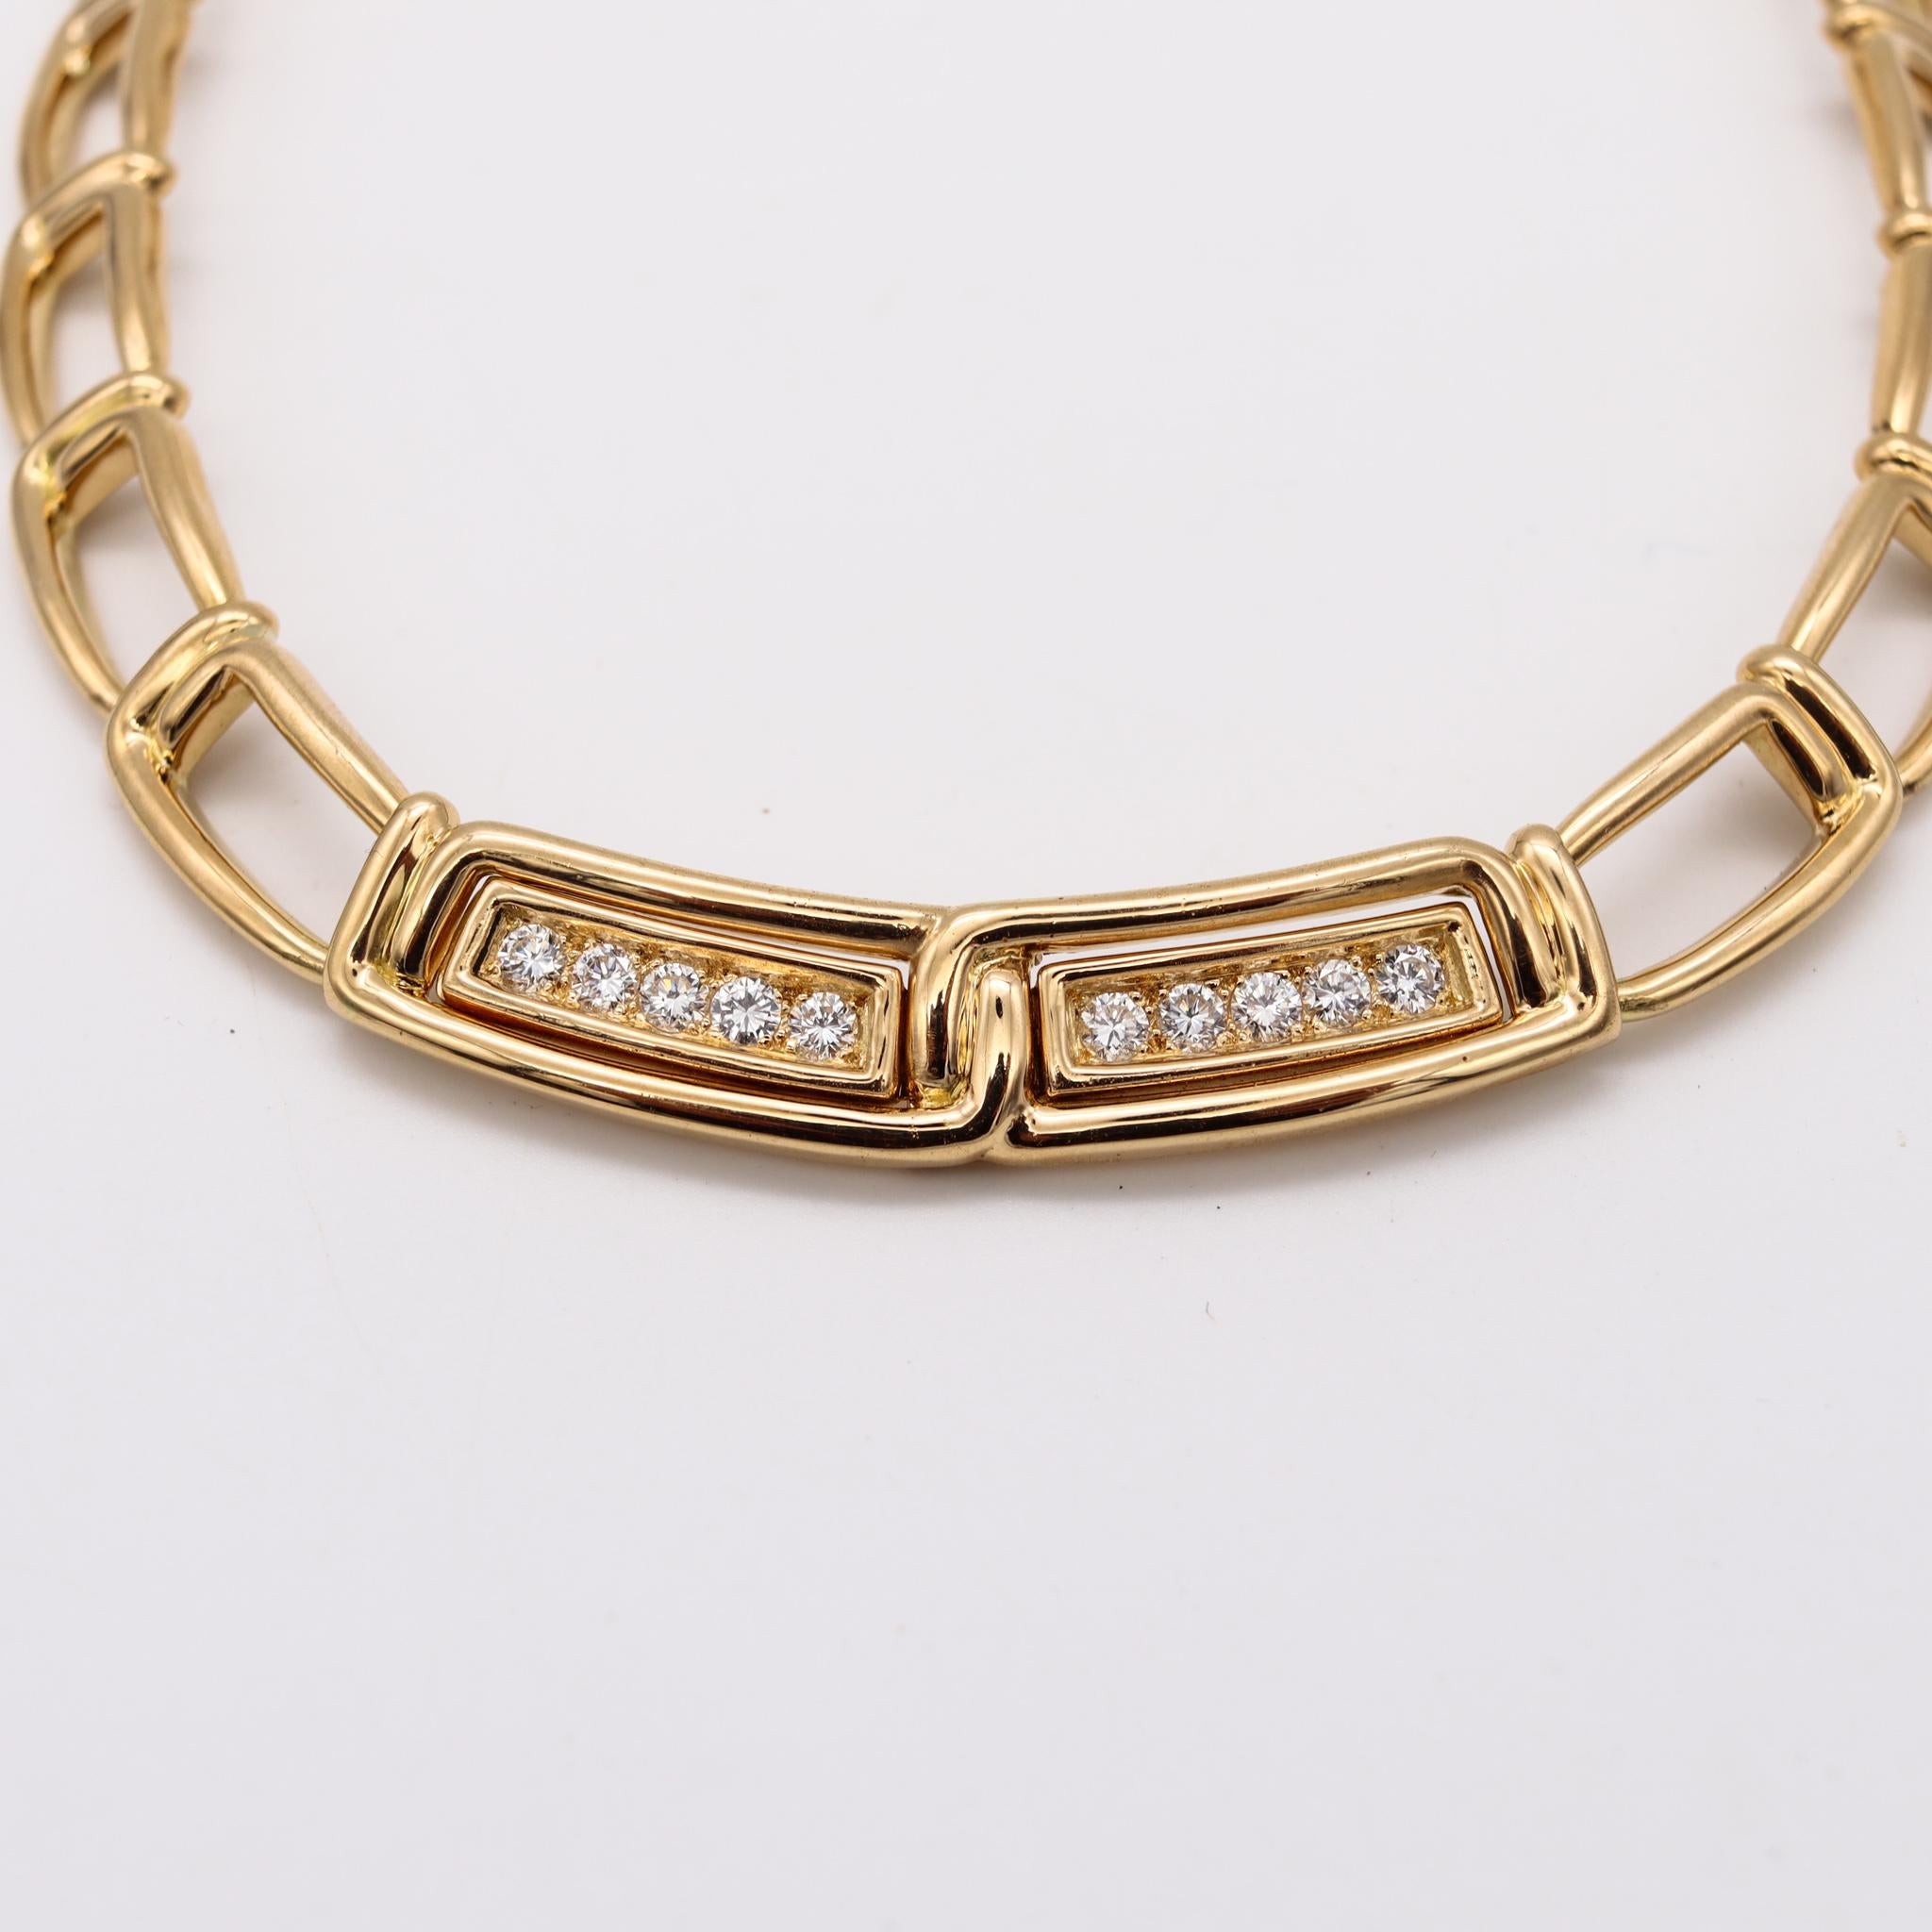 Brilliant Cut Mellerio Dits Meller 1970 Paris Rare Necklace 18kt Gold 1.11 Cts VVS Diamonds For Sale